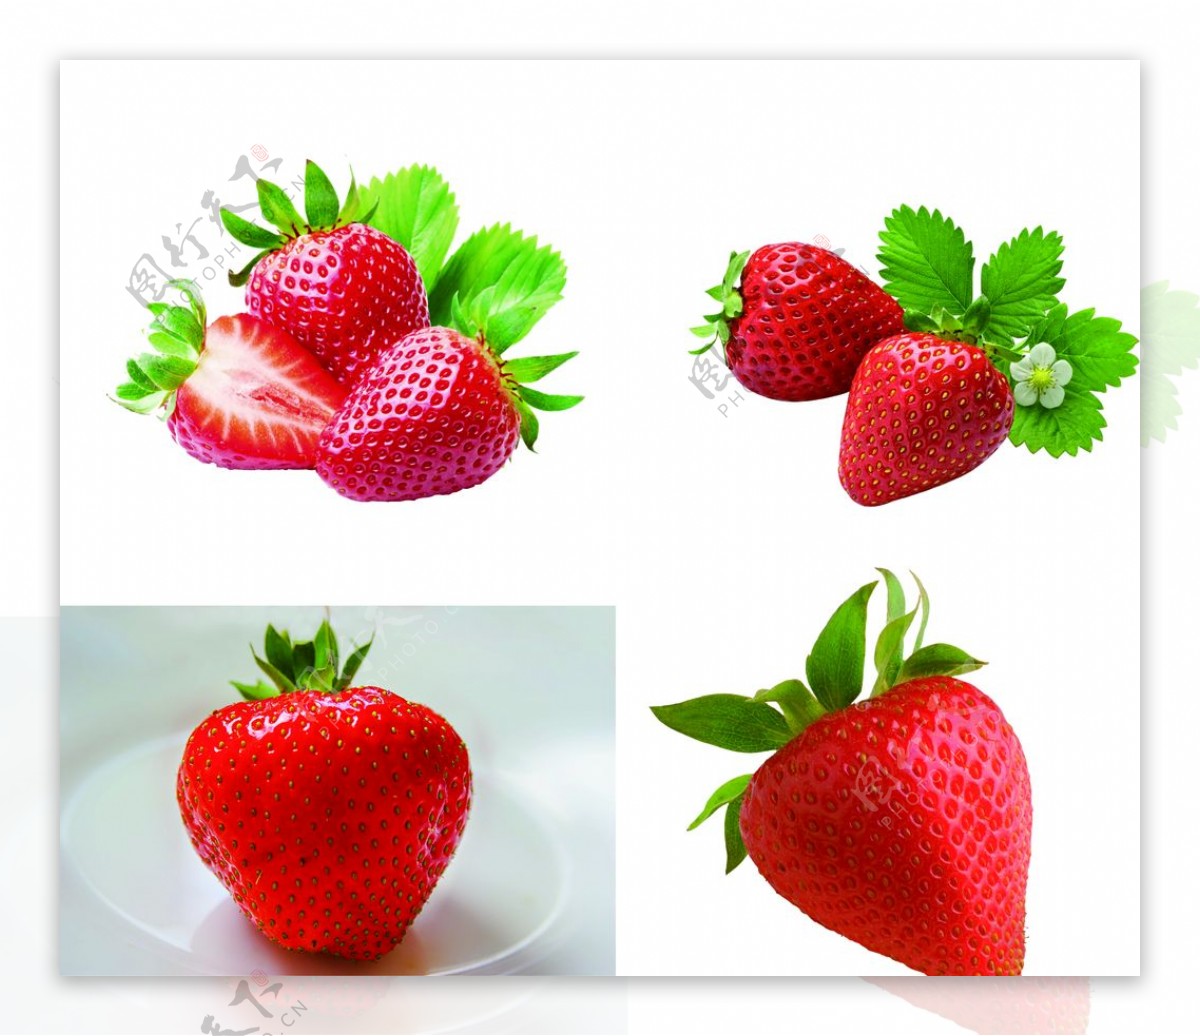 鲜草莓草莓奶油草莓有机草